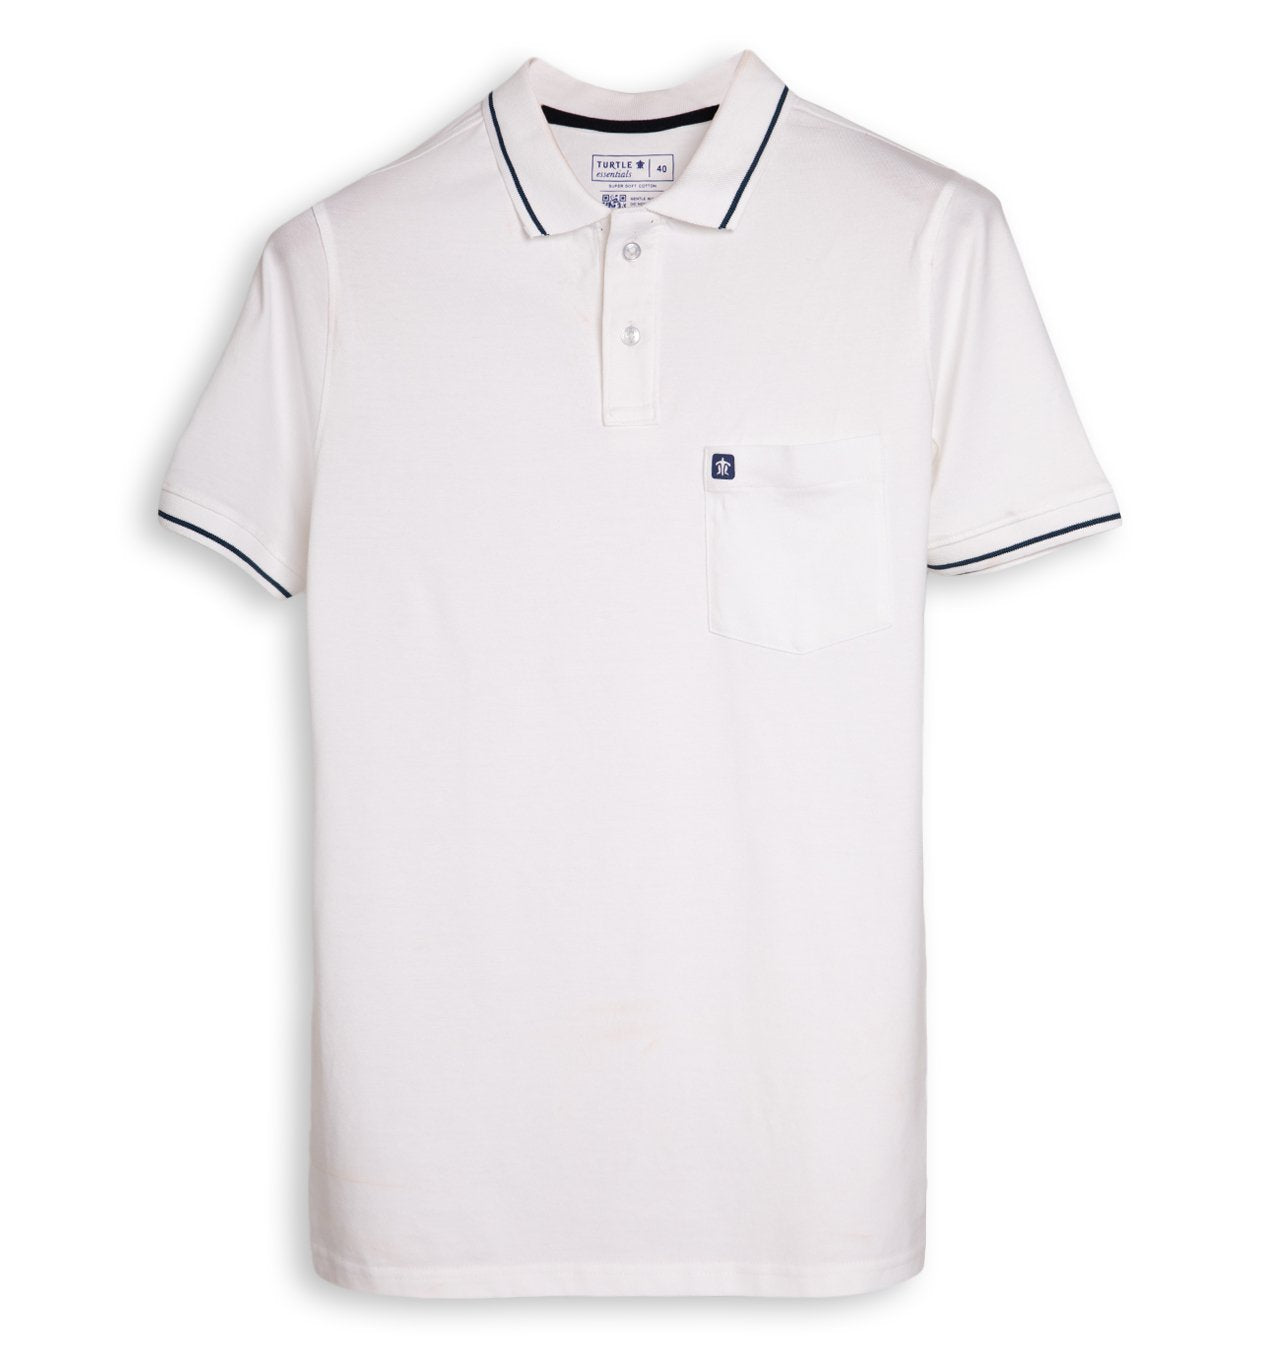 White & Navy Polo T-shirt For Men (Pack of 2)